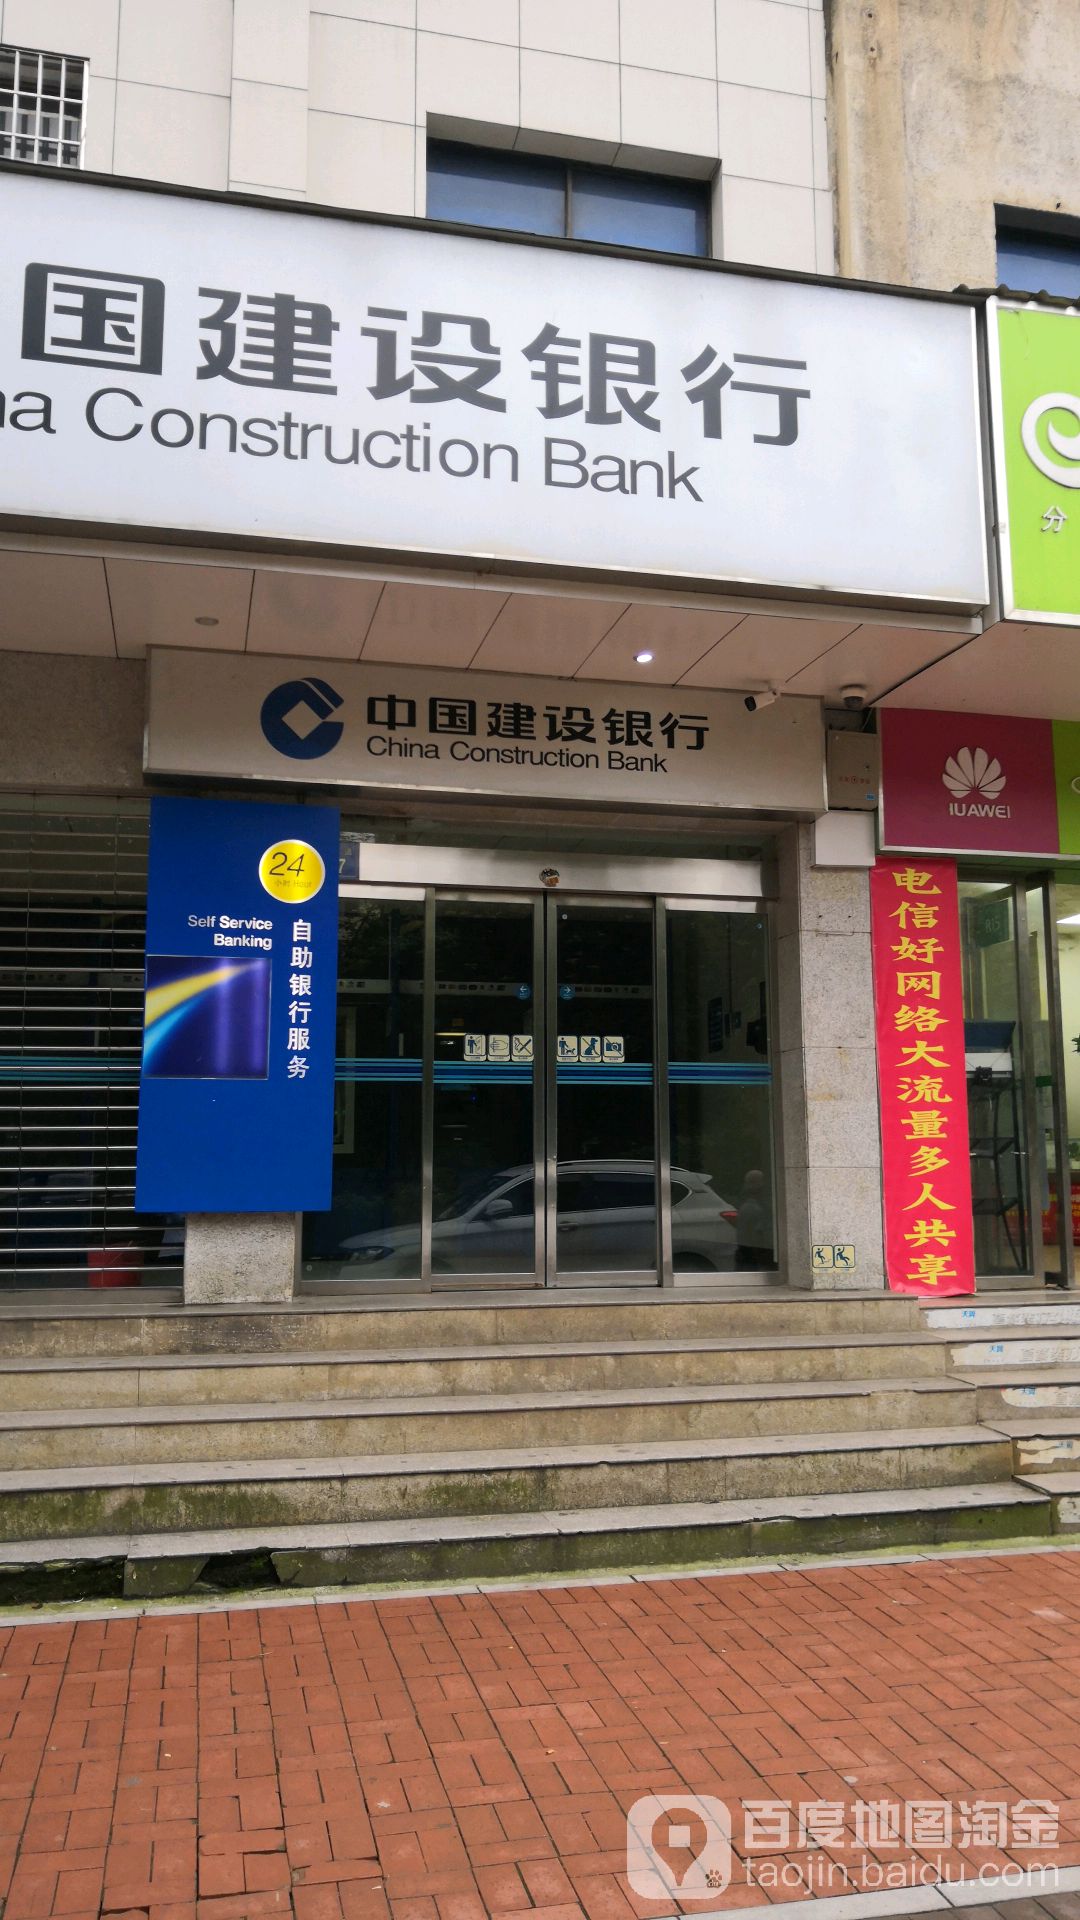 中國建設銀行24小時自助銀行(樂坪大道店)